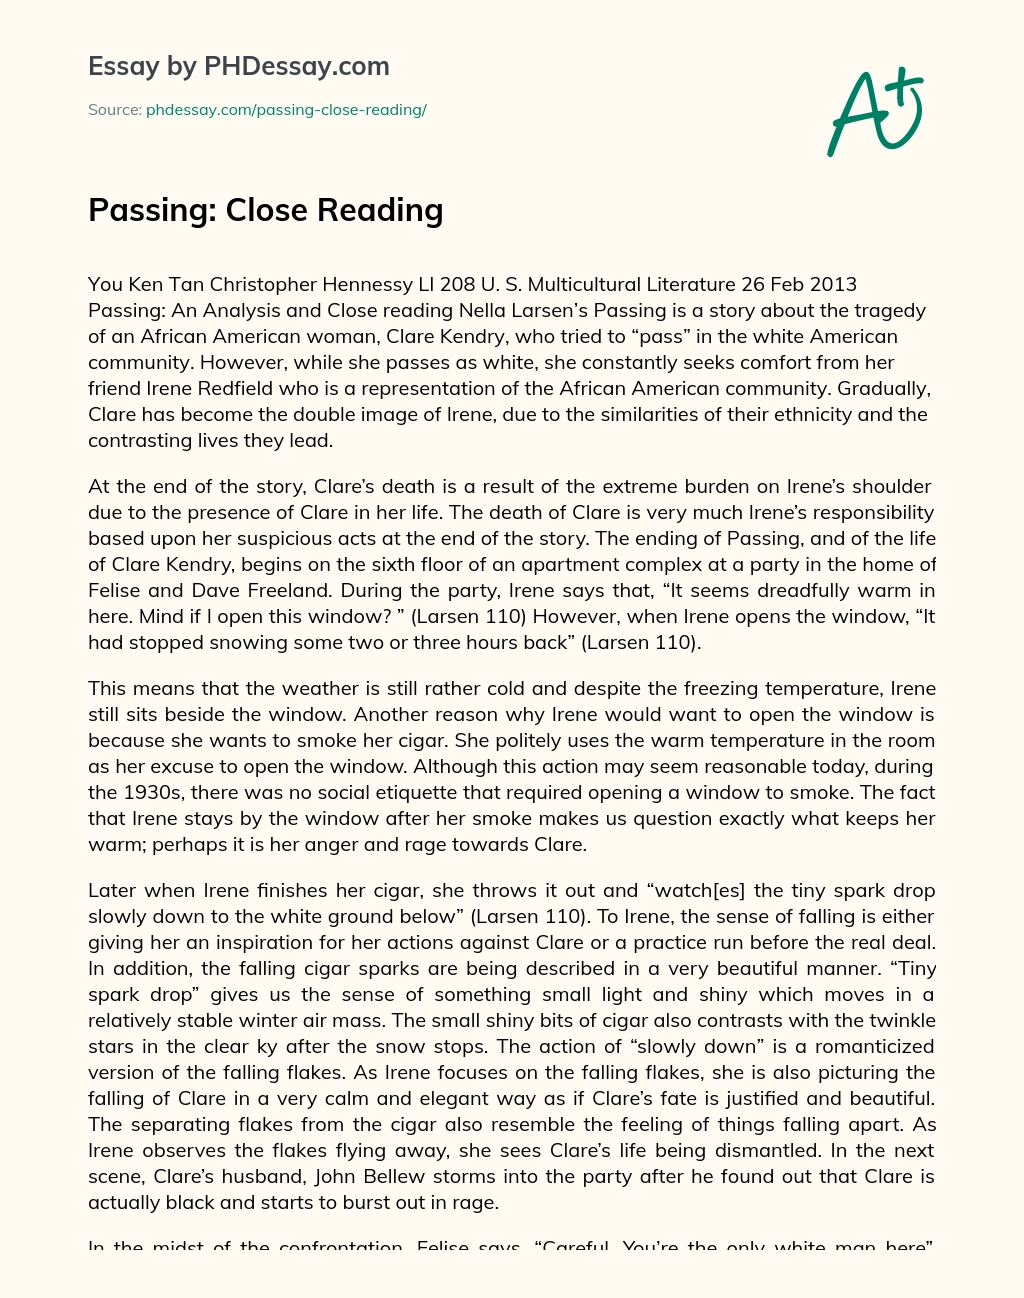 Passing: Close Reading essay